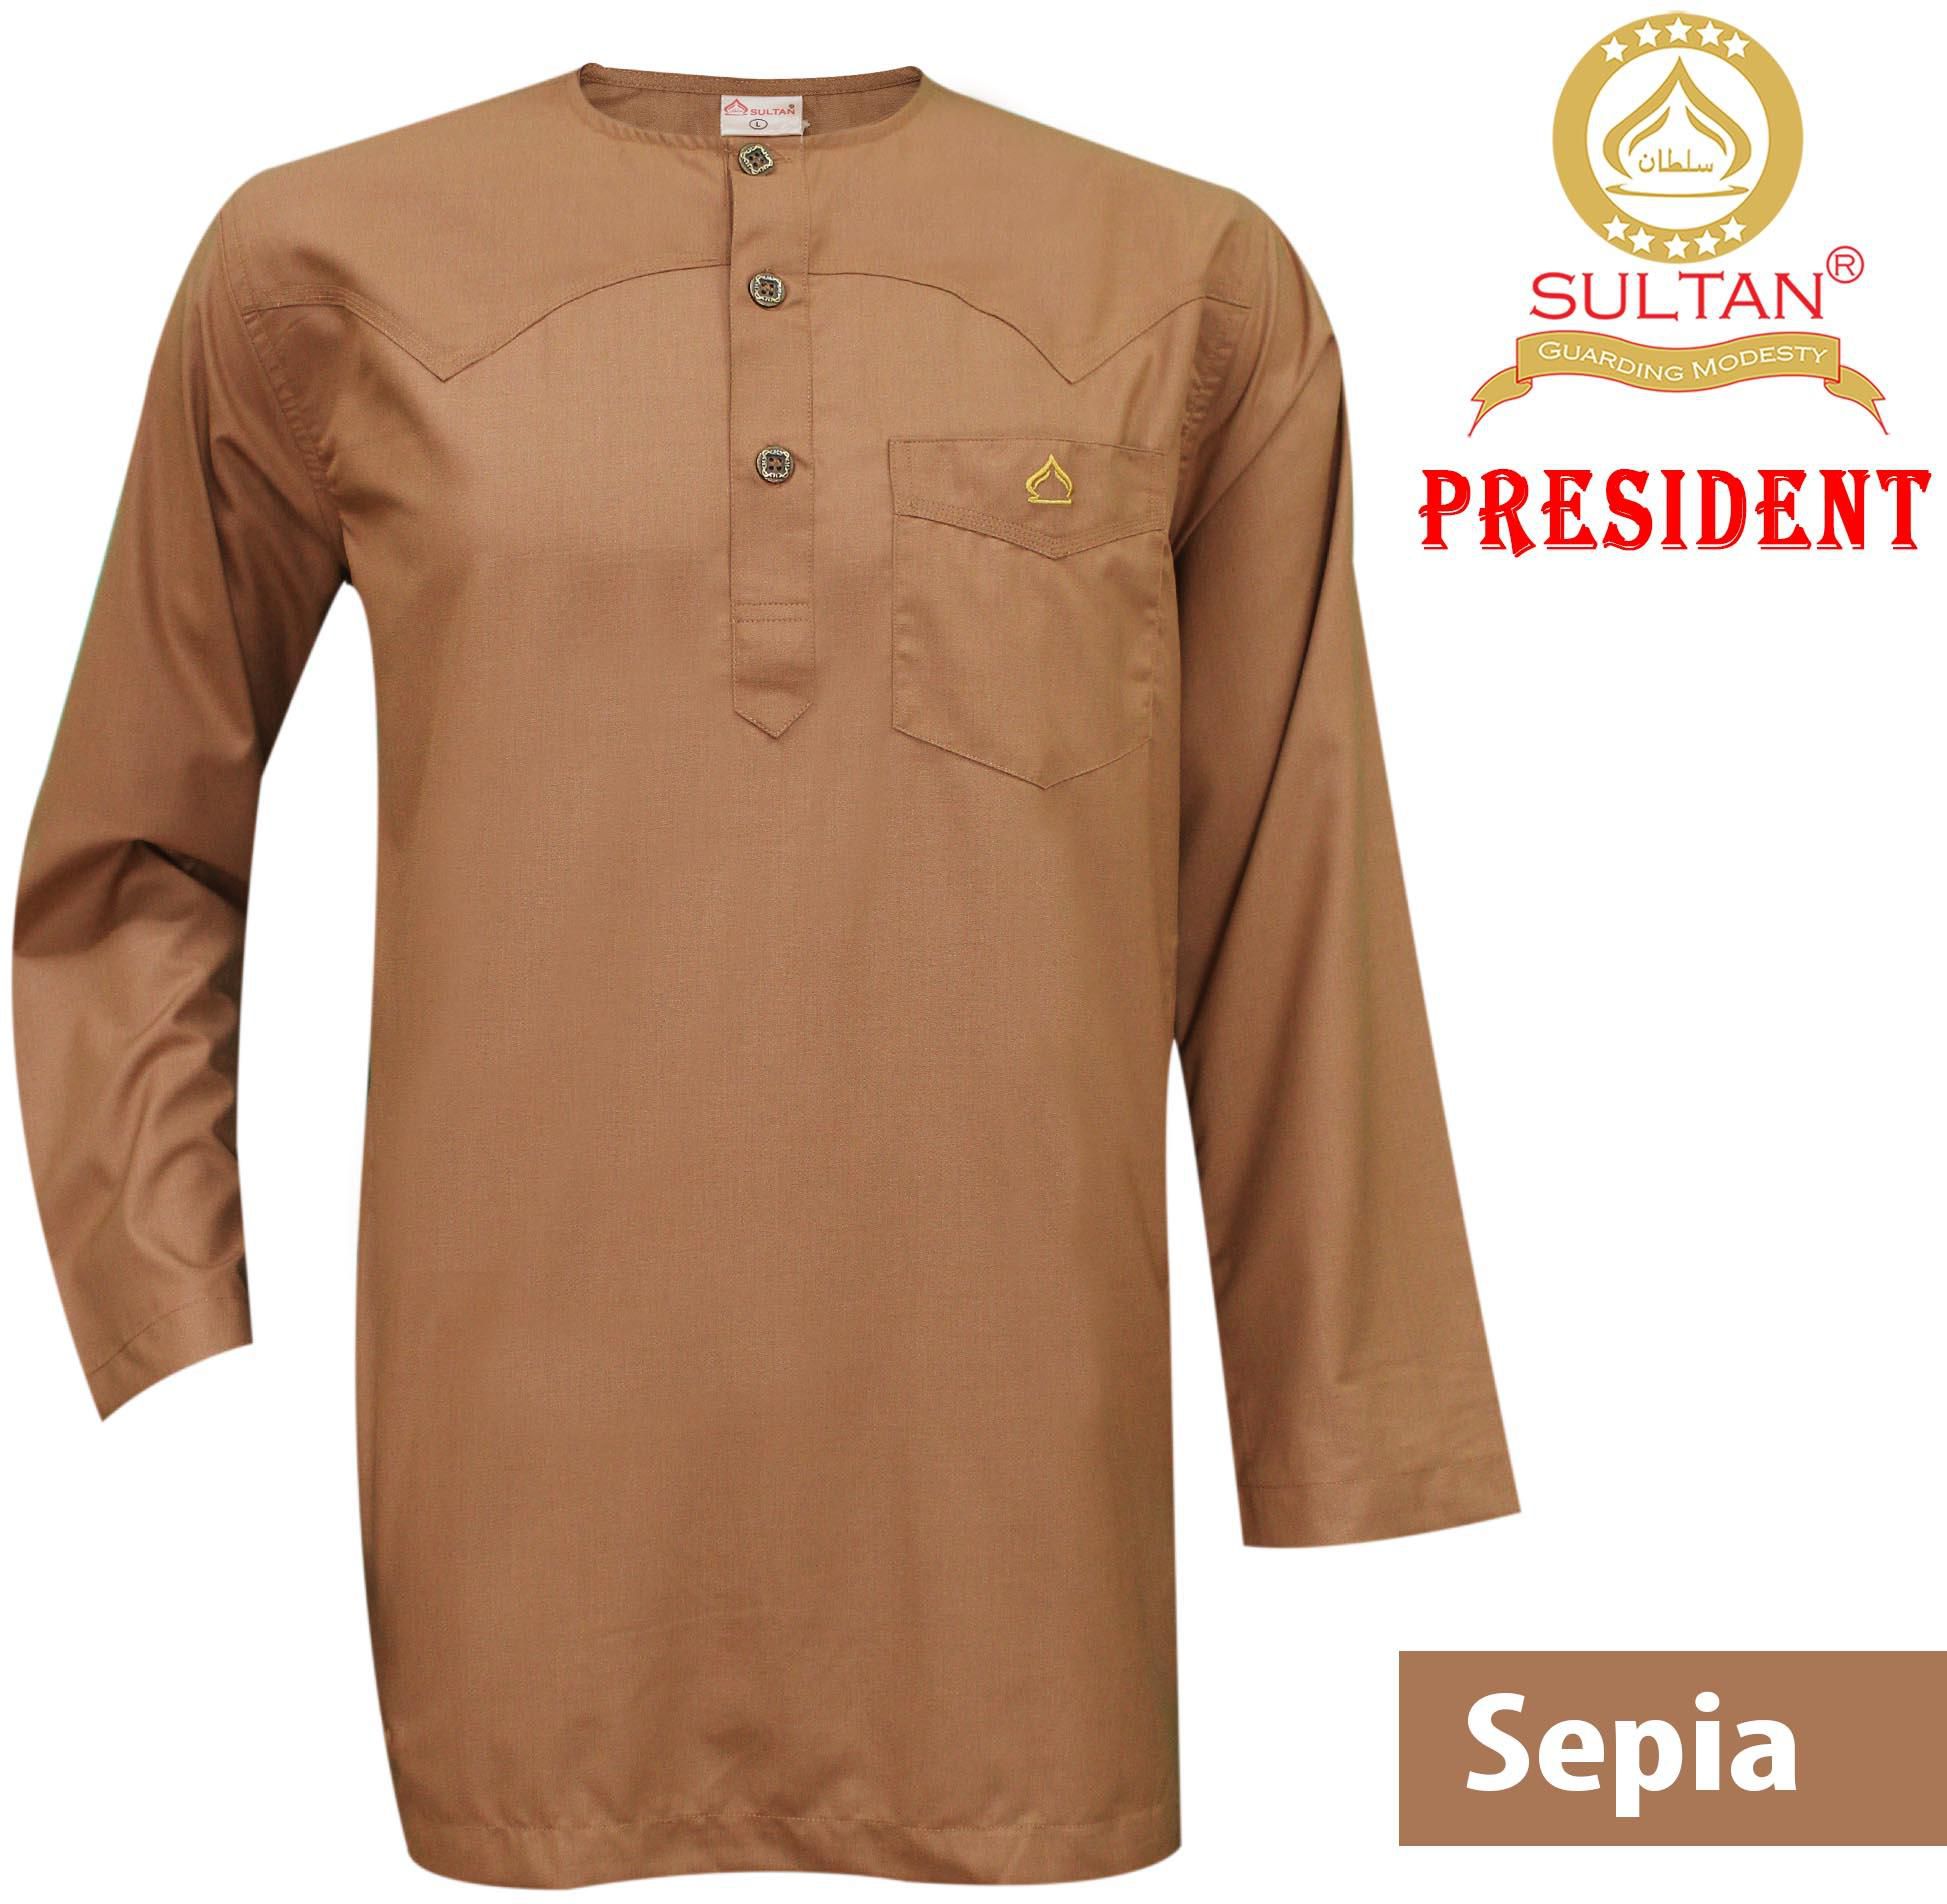 Sultan Kurta - President - Round Neck Full Sleeves - 5 Sizes (Sepia)